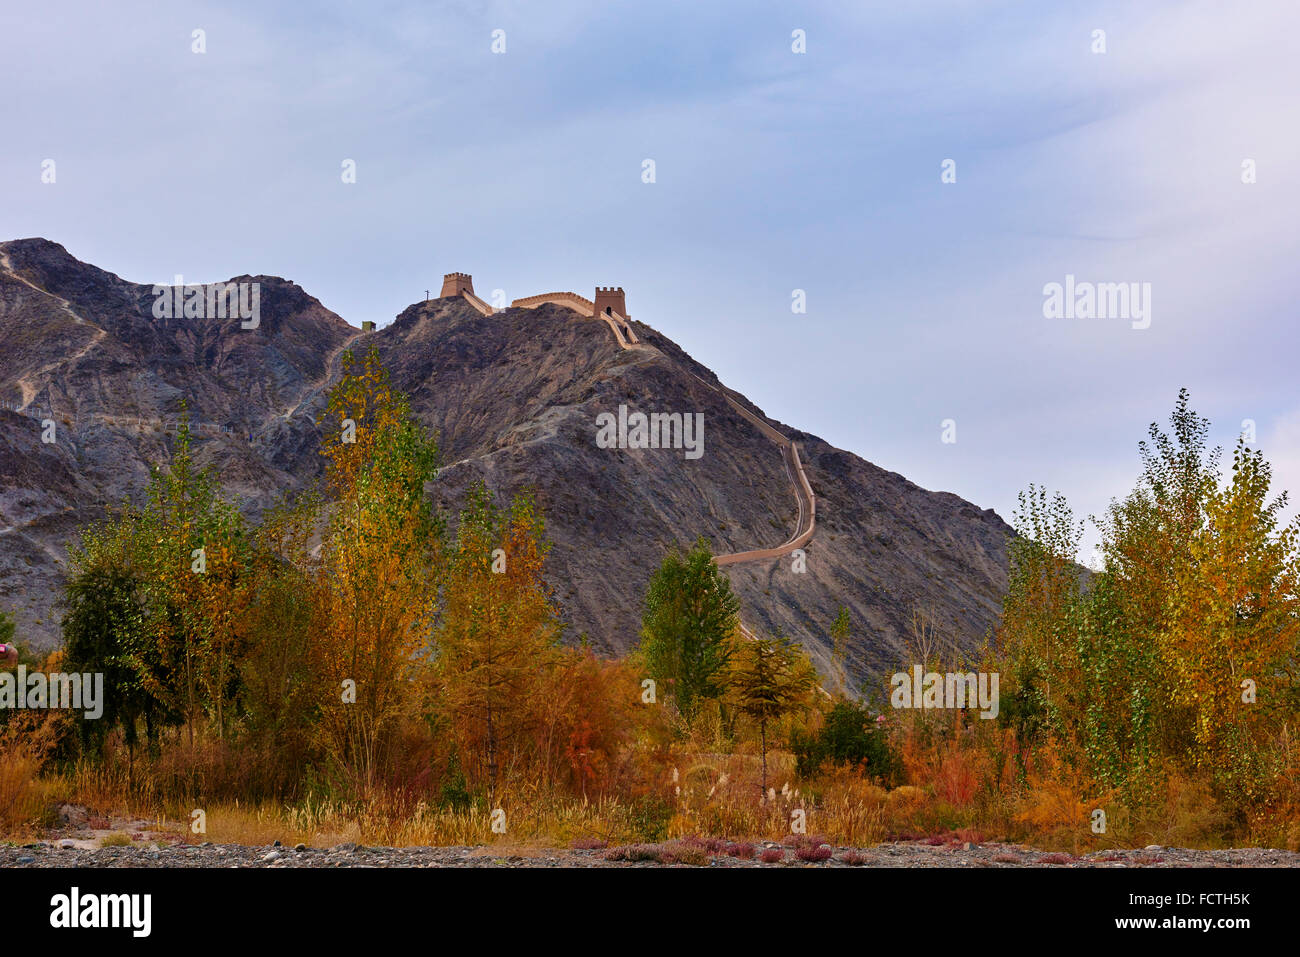 China, Provinz Gansu, Jiayuguan, die Festung am Westende der großen Mauer, UNESCO-Welterbe Stockfoto